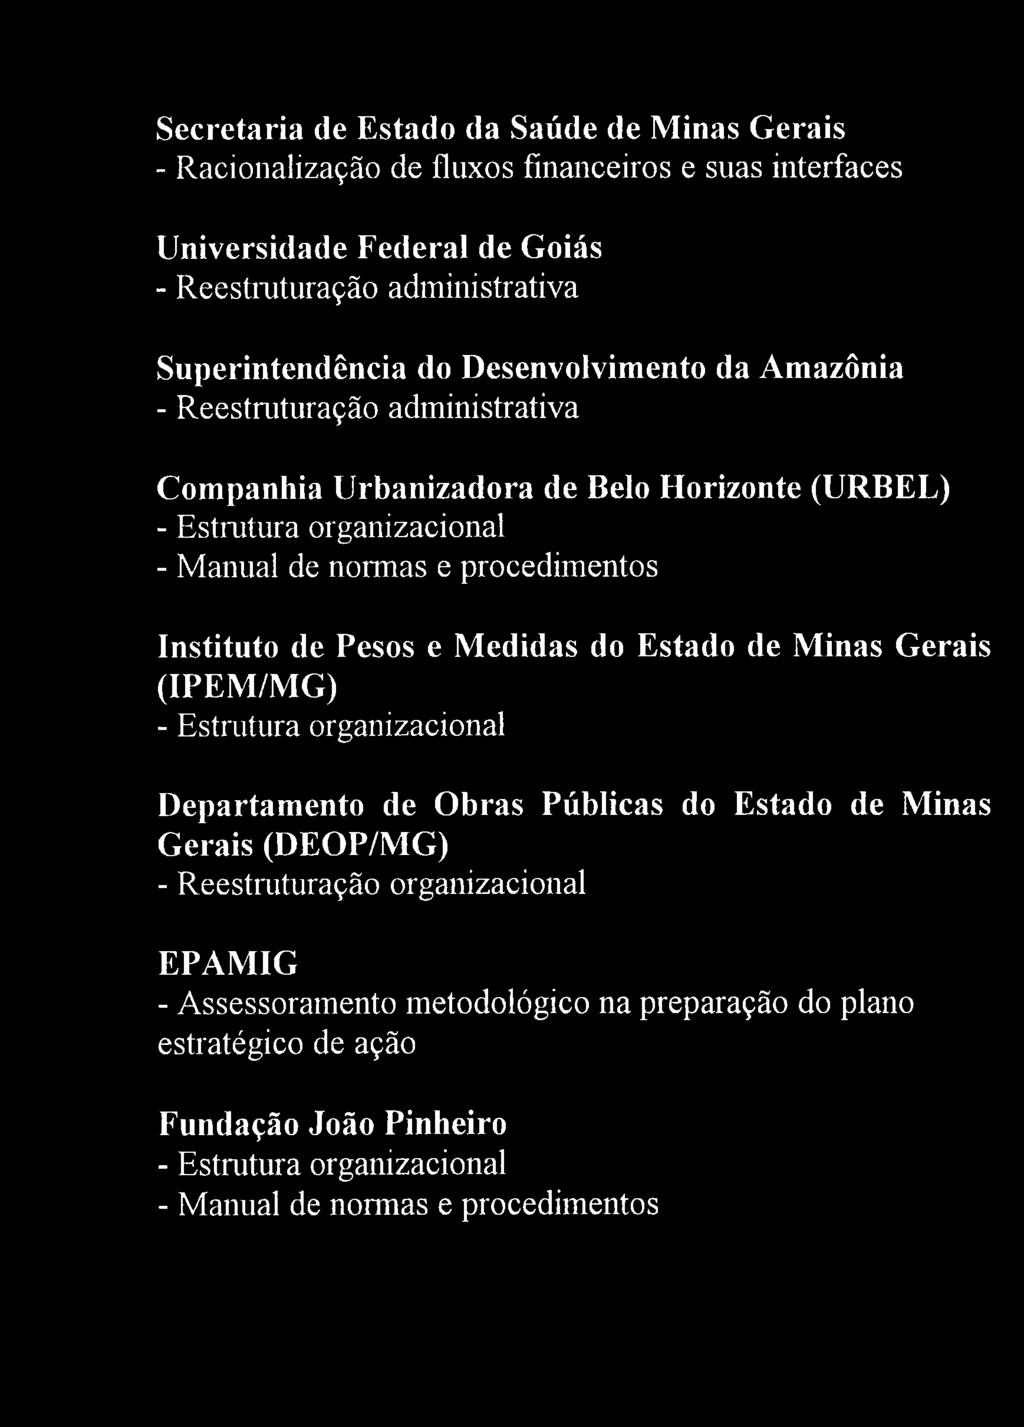 procedimentos Instituto de Pesos e Medidas do Estado de Minas Gerais (IPEM/MG) - Estrutura organizacional Departamento de Obras Públicas do Estado de Minas Gerais (DEOP/MG) -